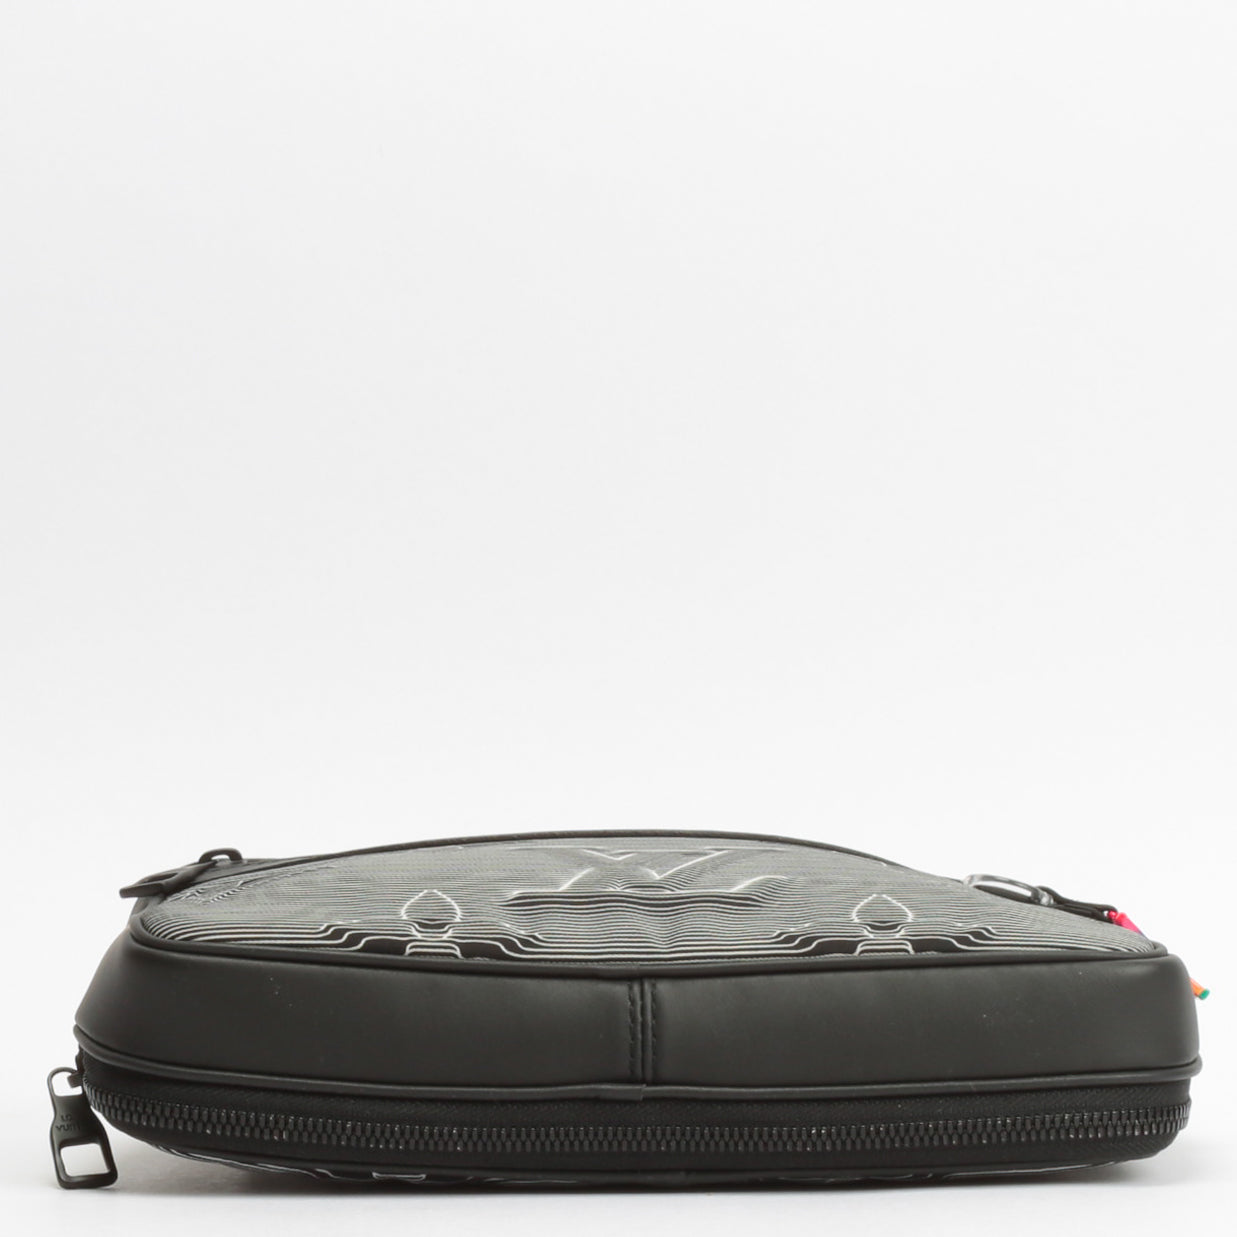 Louis Vuitton Limited Edition 2054 Monogram Messenger Bag